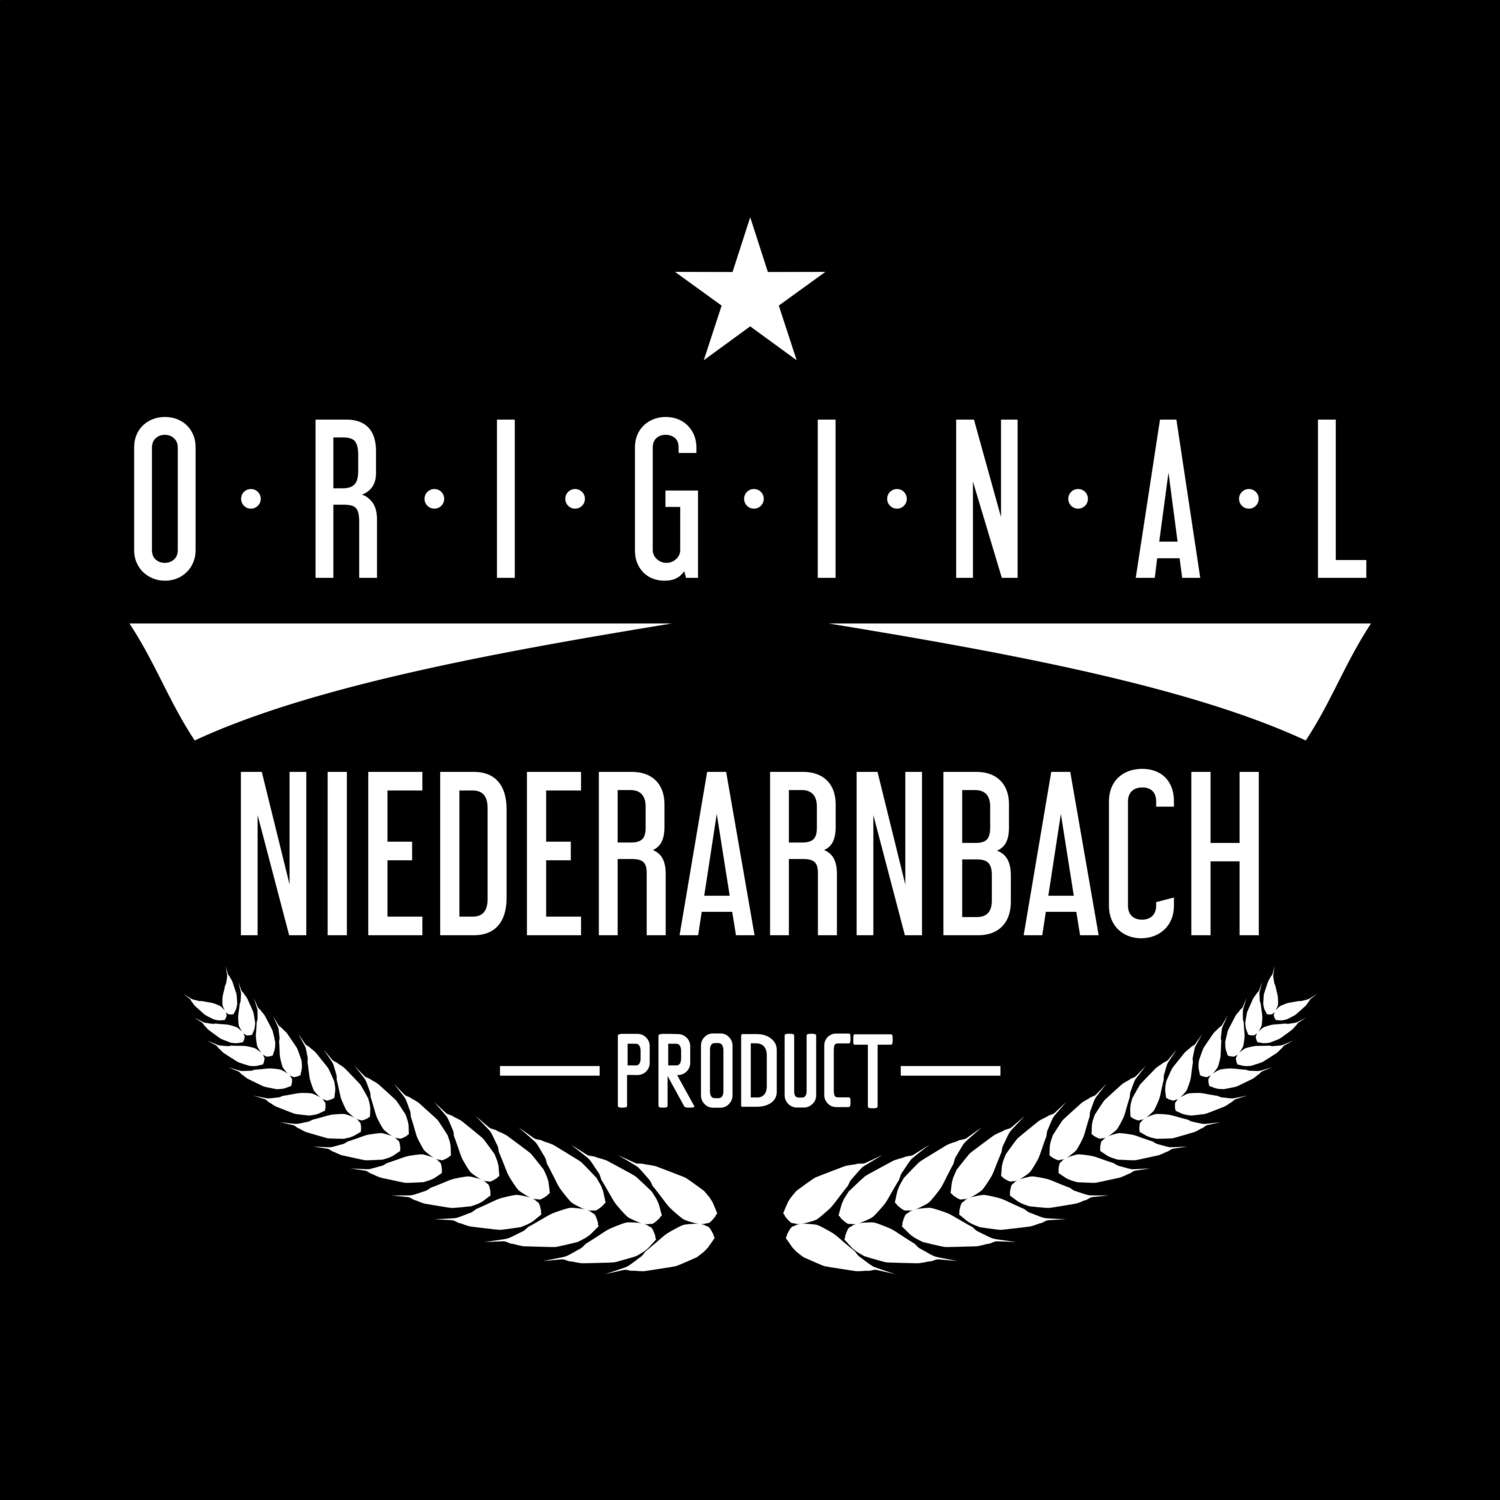 Niederarnbach T-Shirt »Original Product«